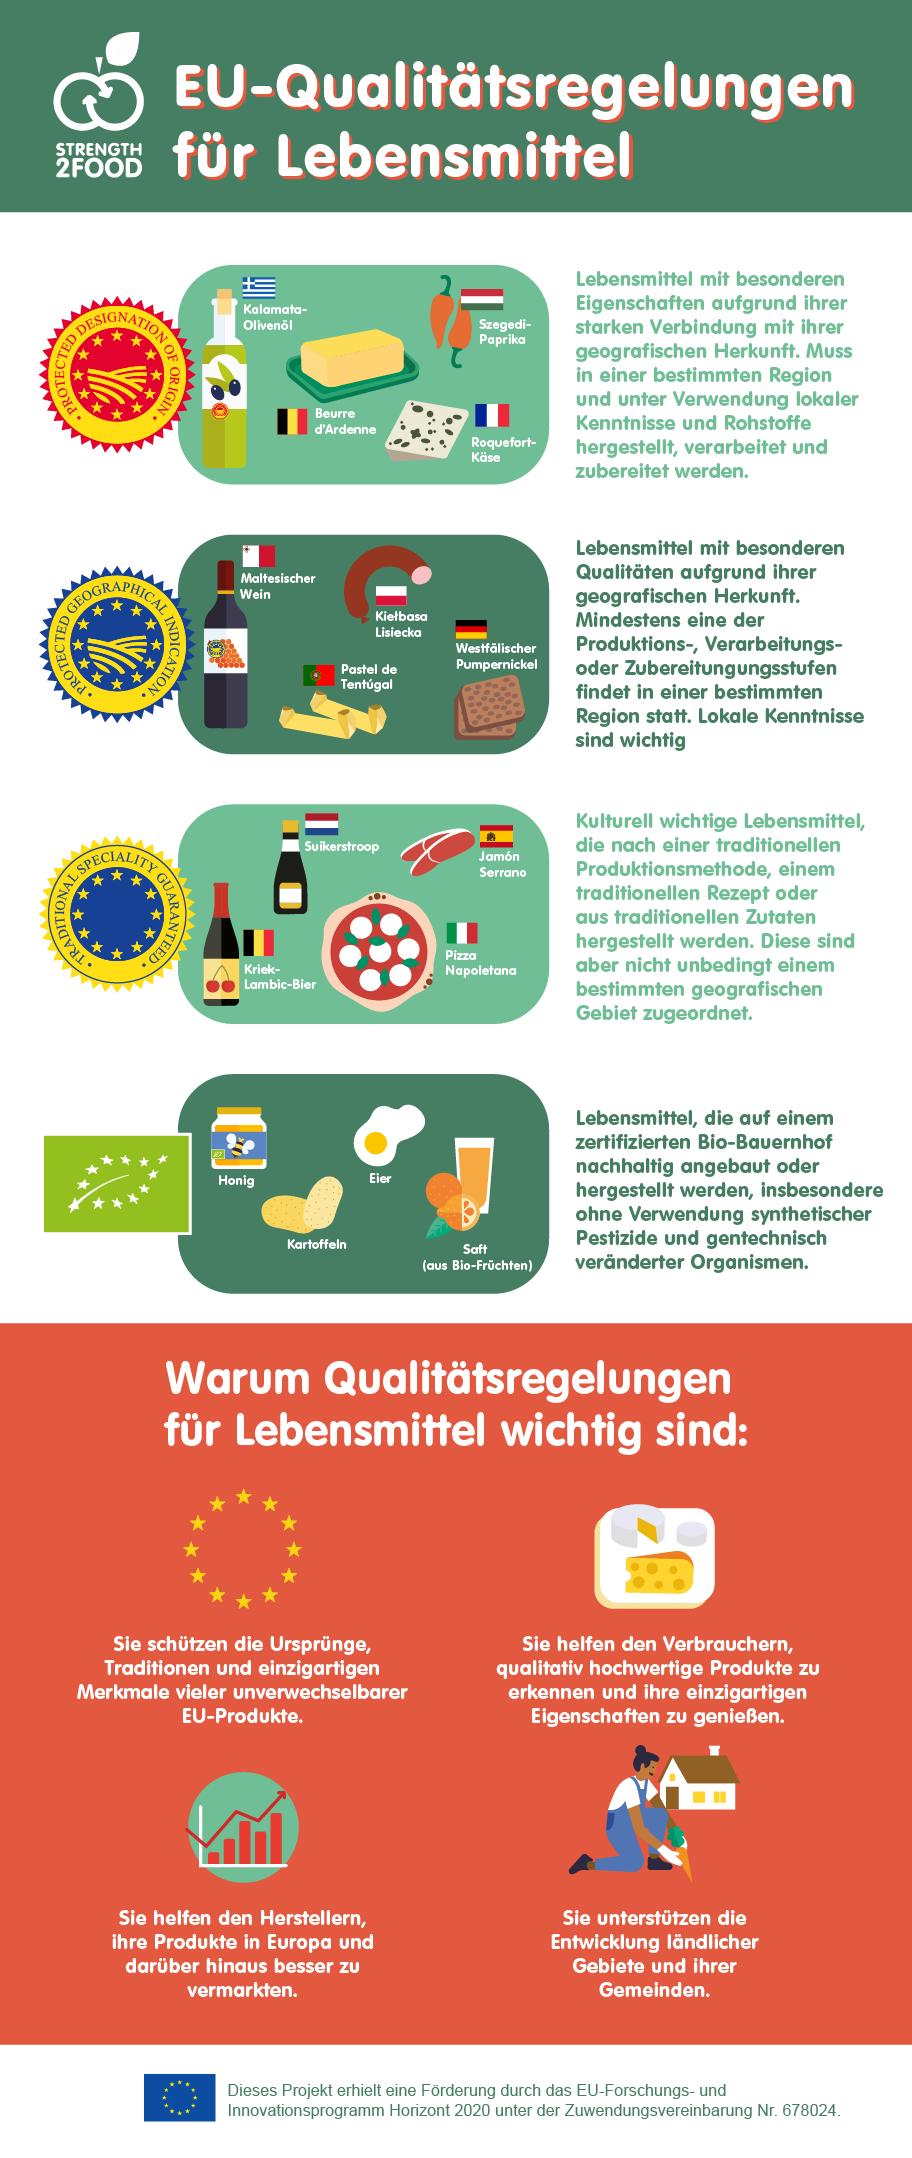 EU-Qualitätsregelungen für Lebensmittel